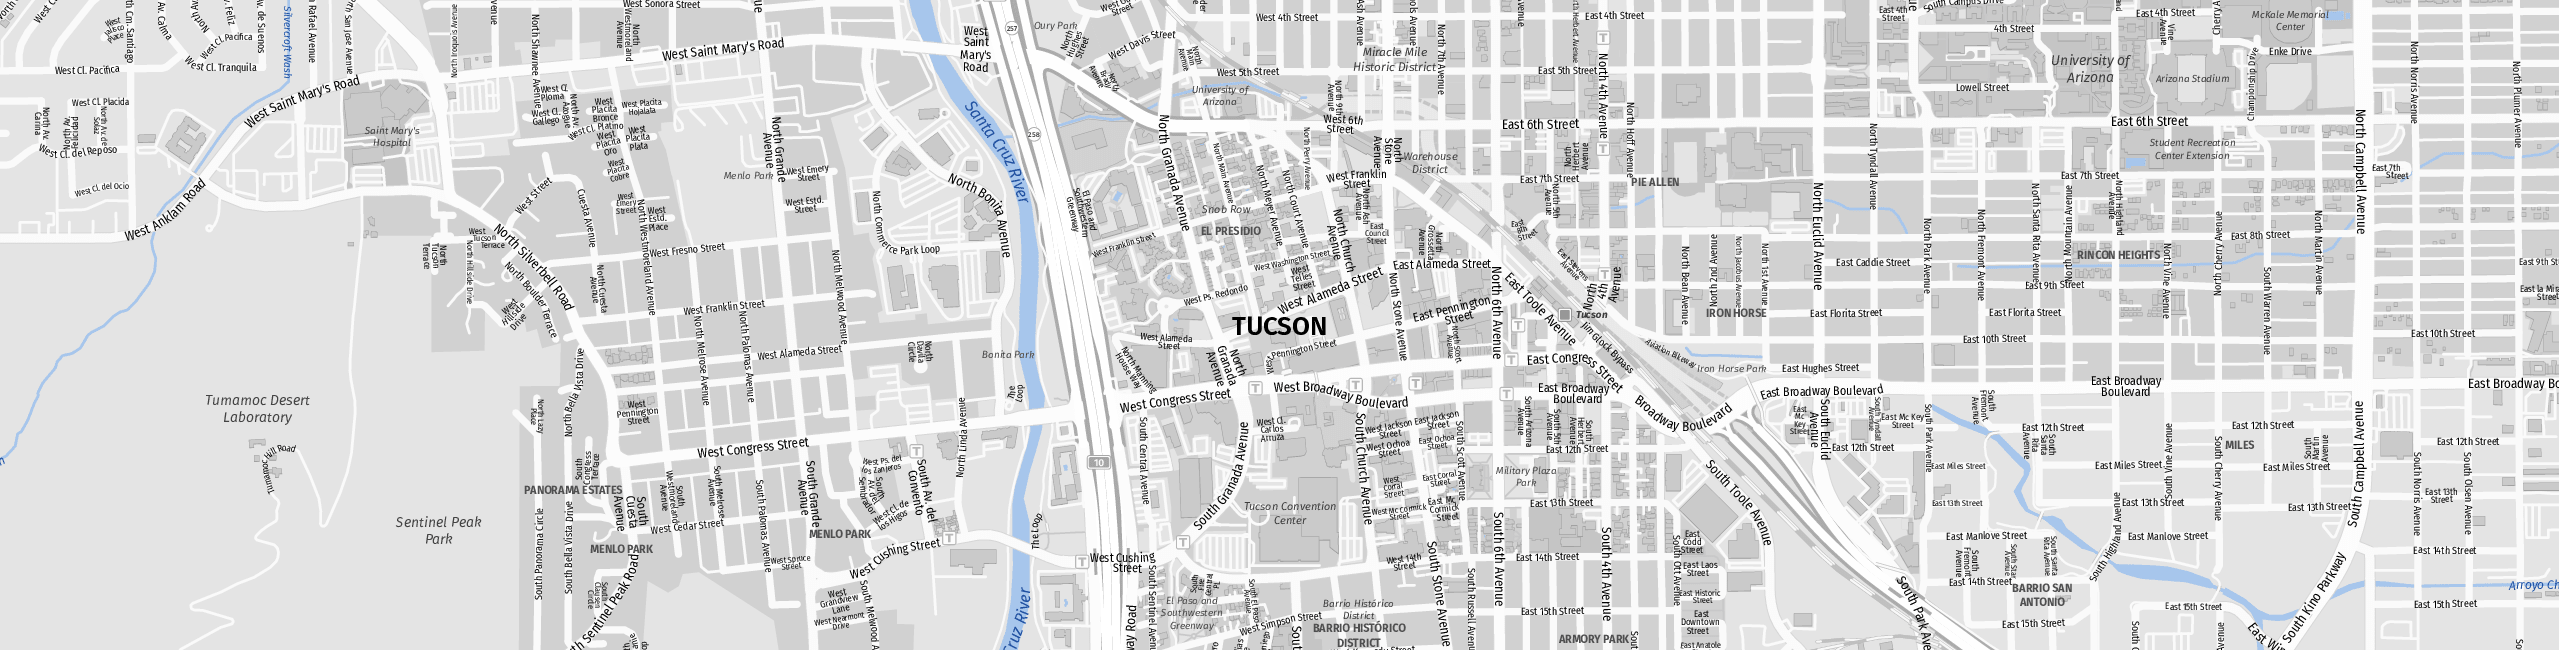 Stadtplan Tucson zum Downloaden.